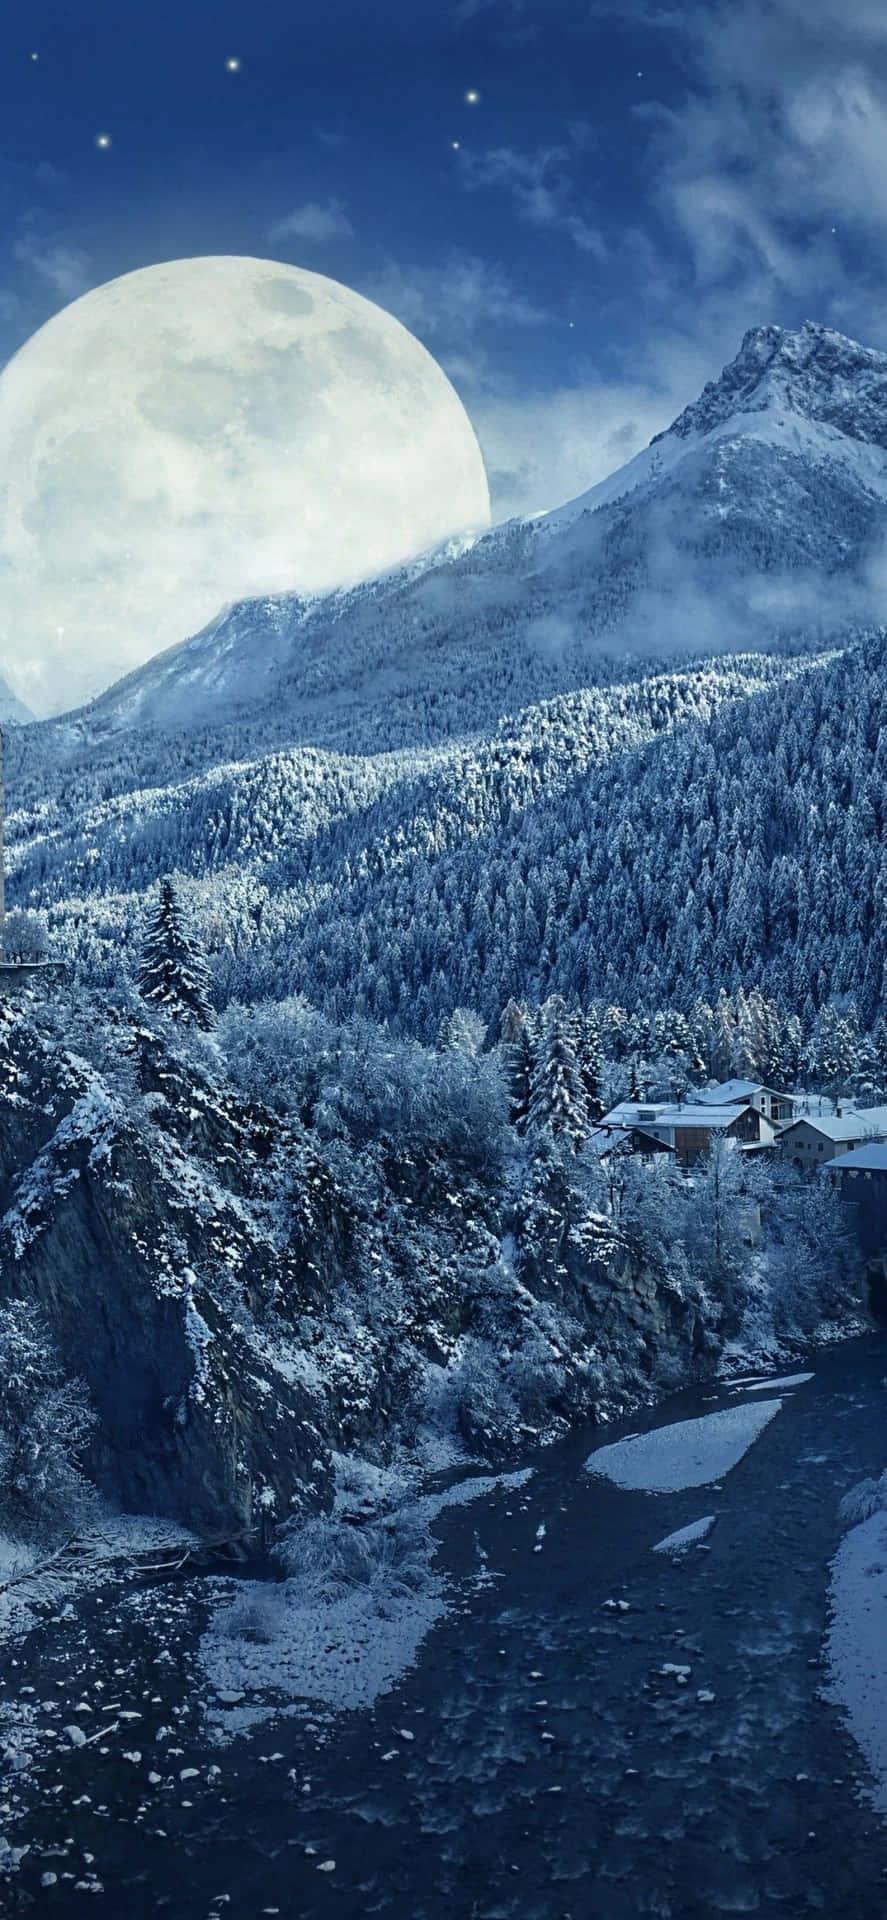 Winter wonderland seen through the lens of an Iphone Wallpaper